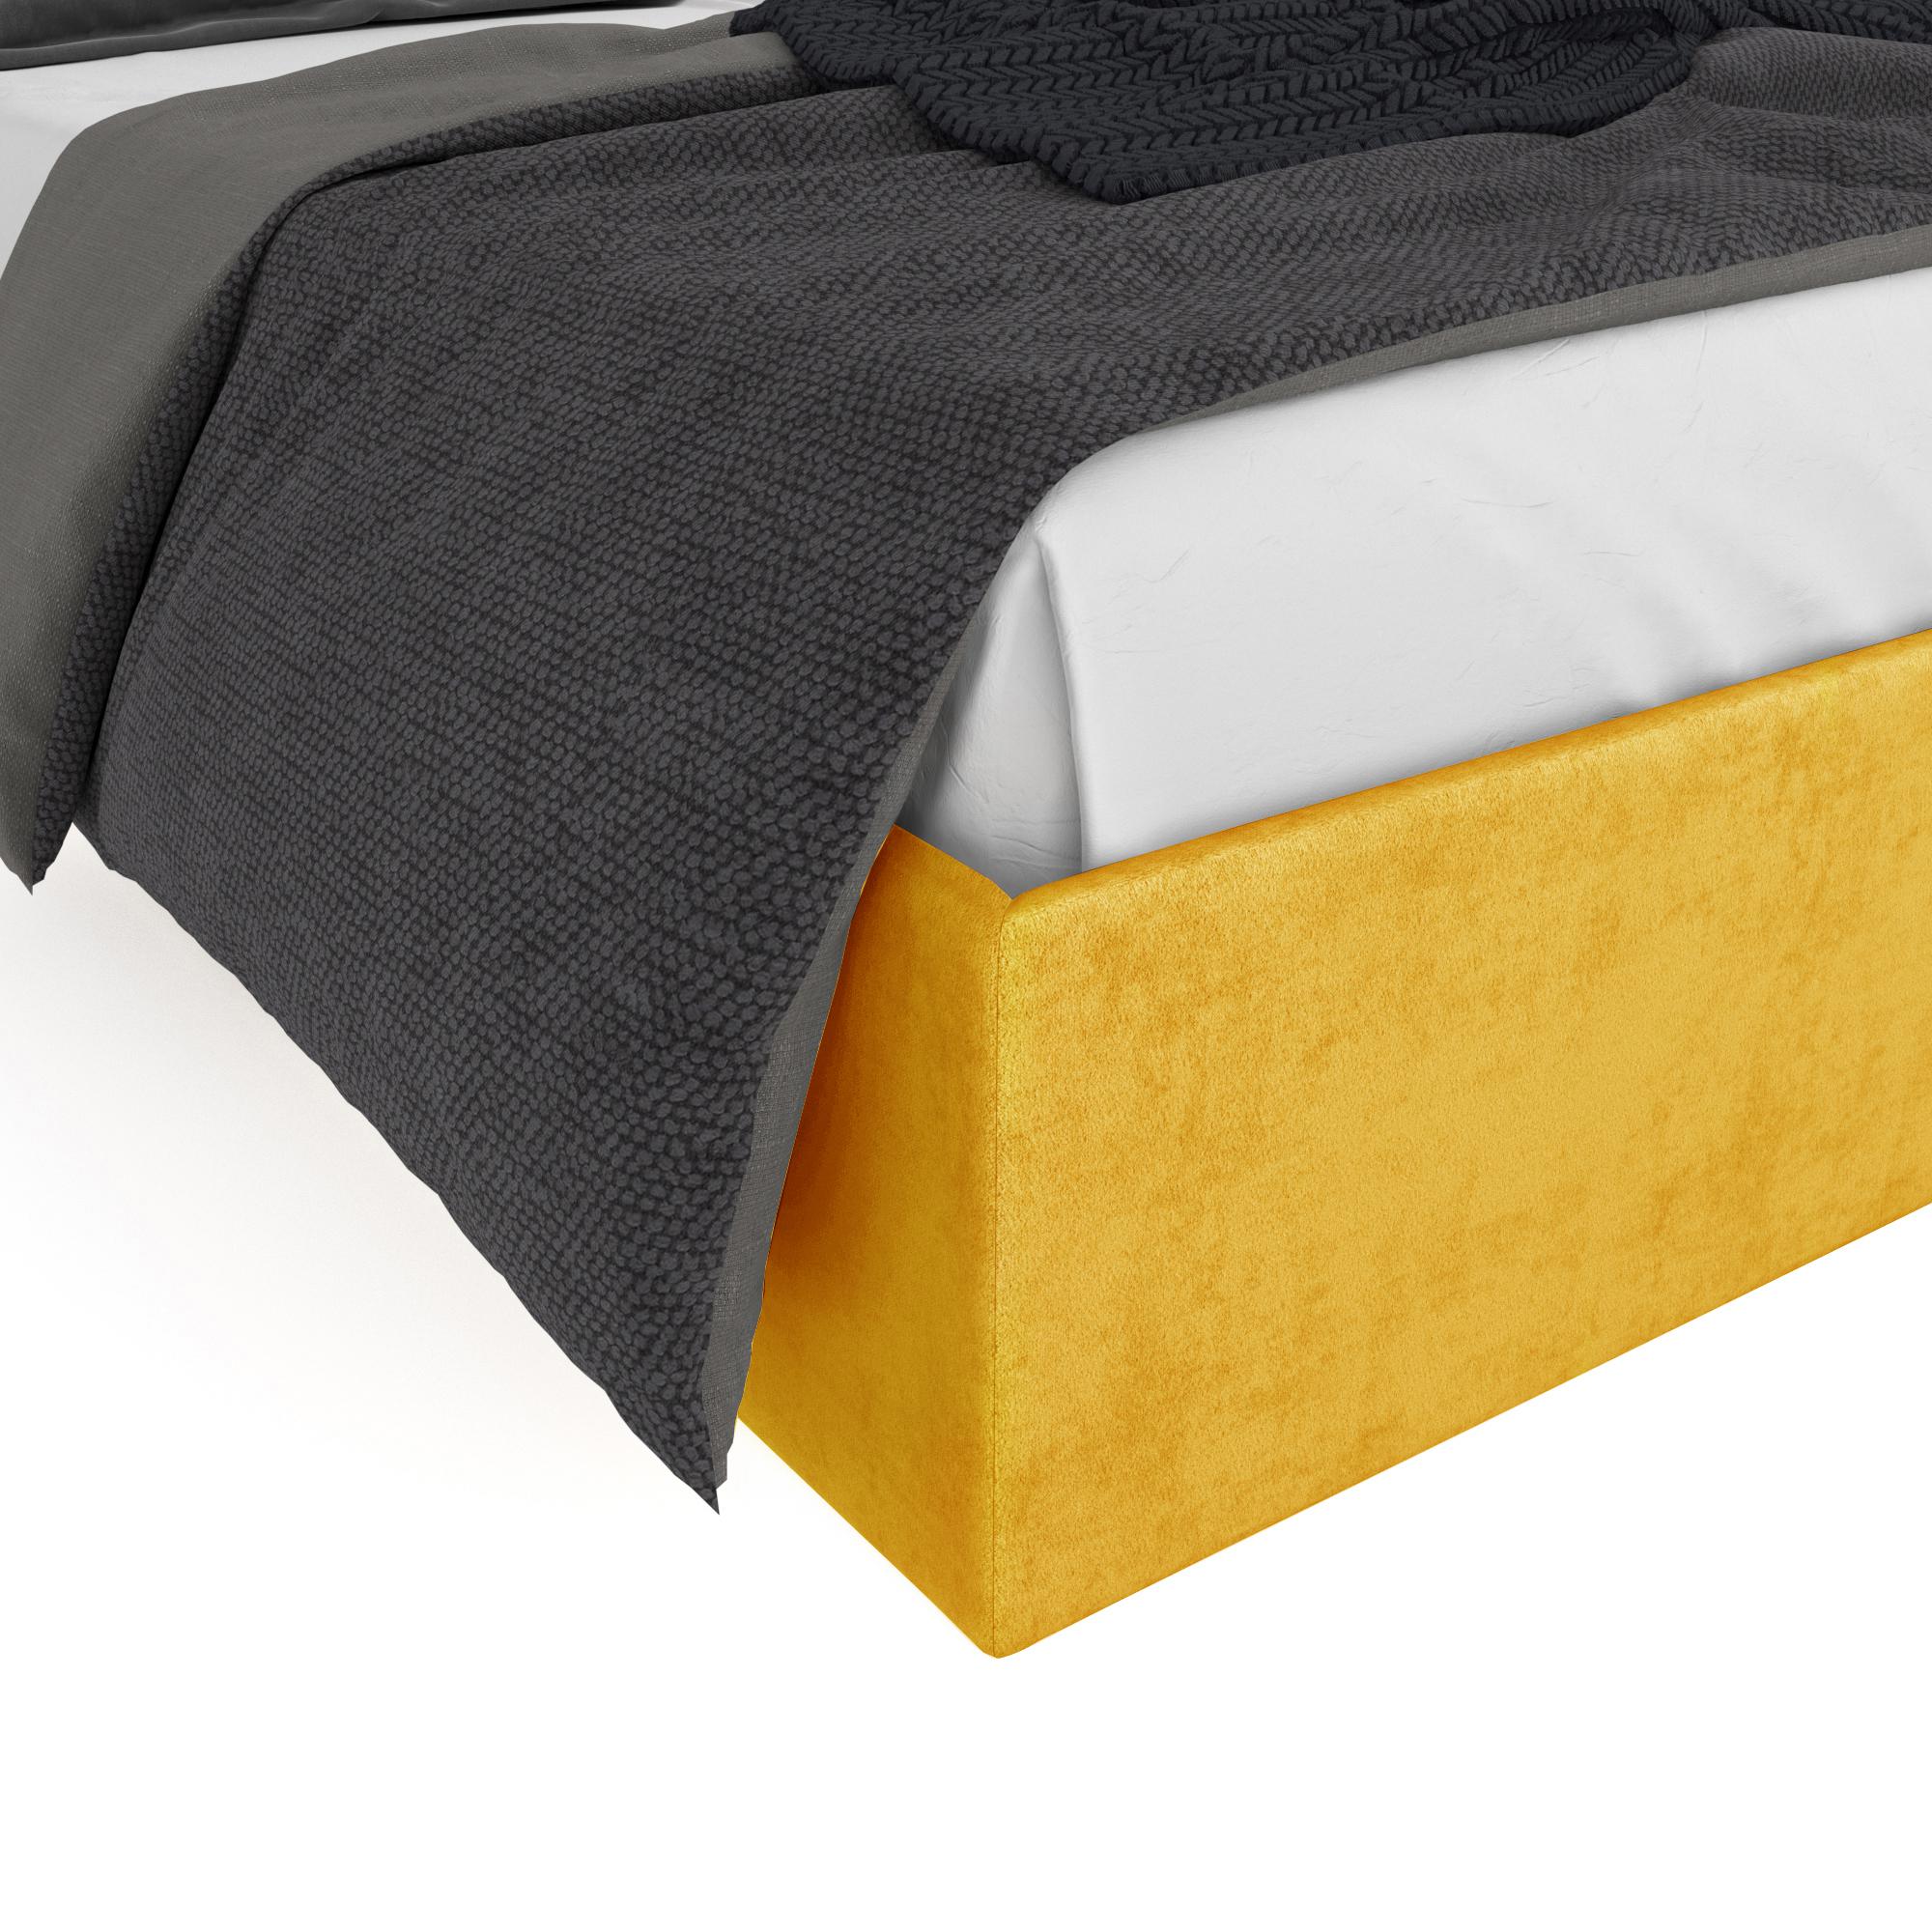 Кровать Салерно желтая 160х200 изображение товара